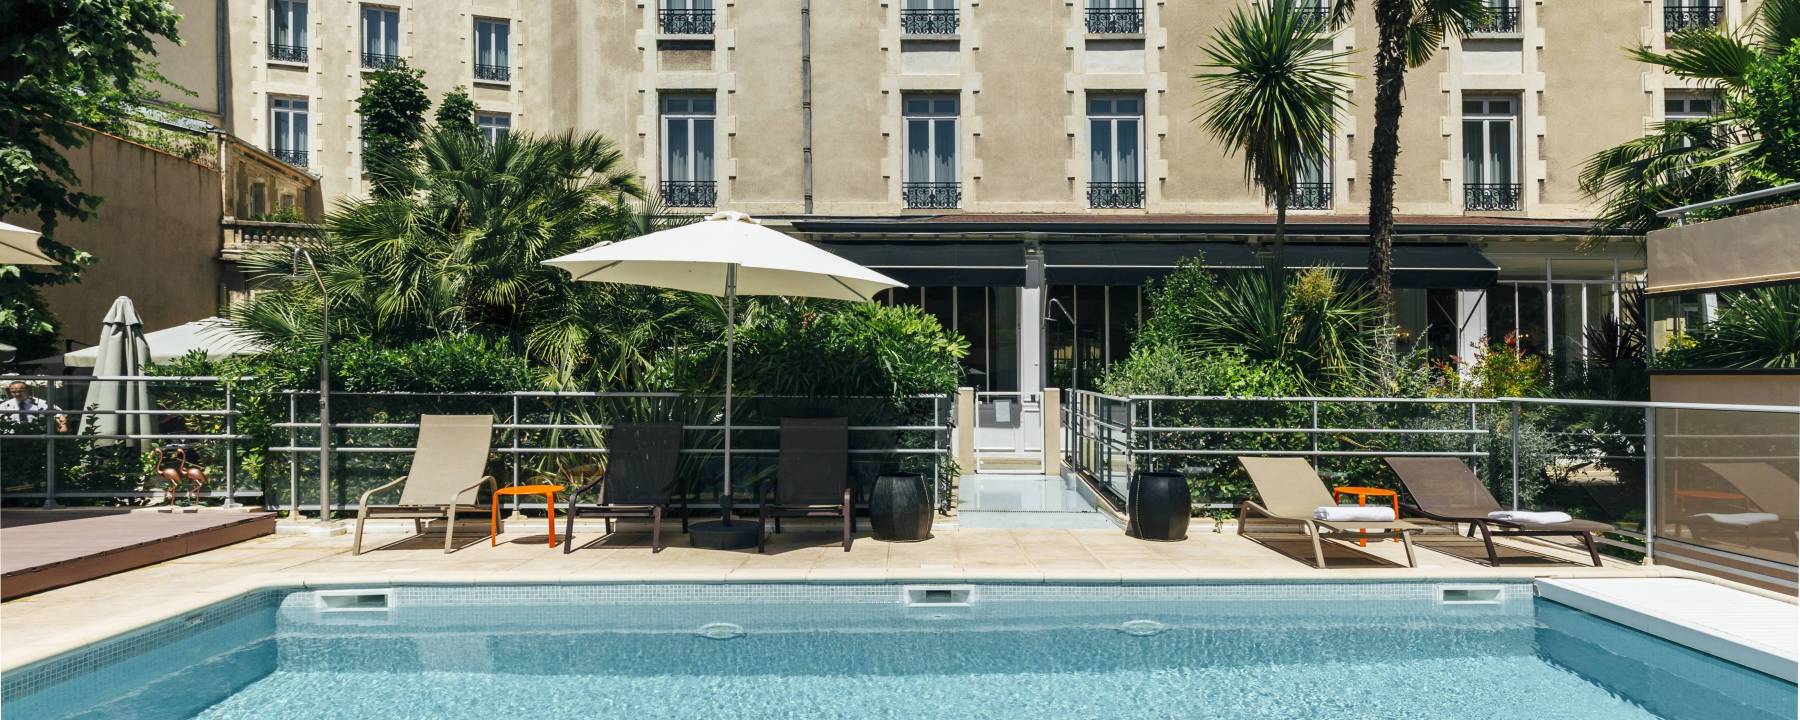 Recrutement: Apprenti Réceptionniste Tournant W/M chez Oceania Hotels à Montpellier